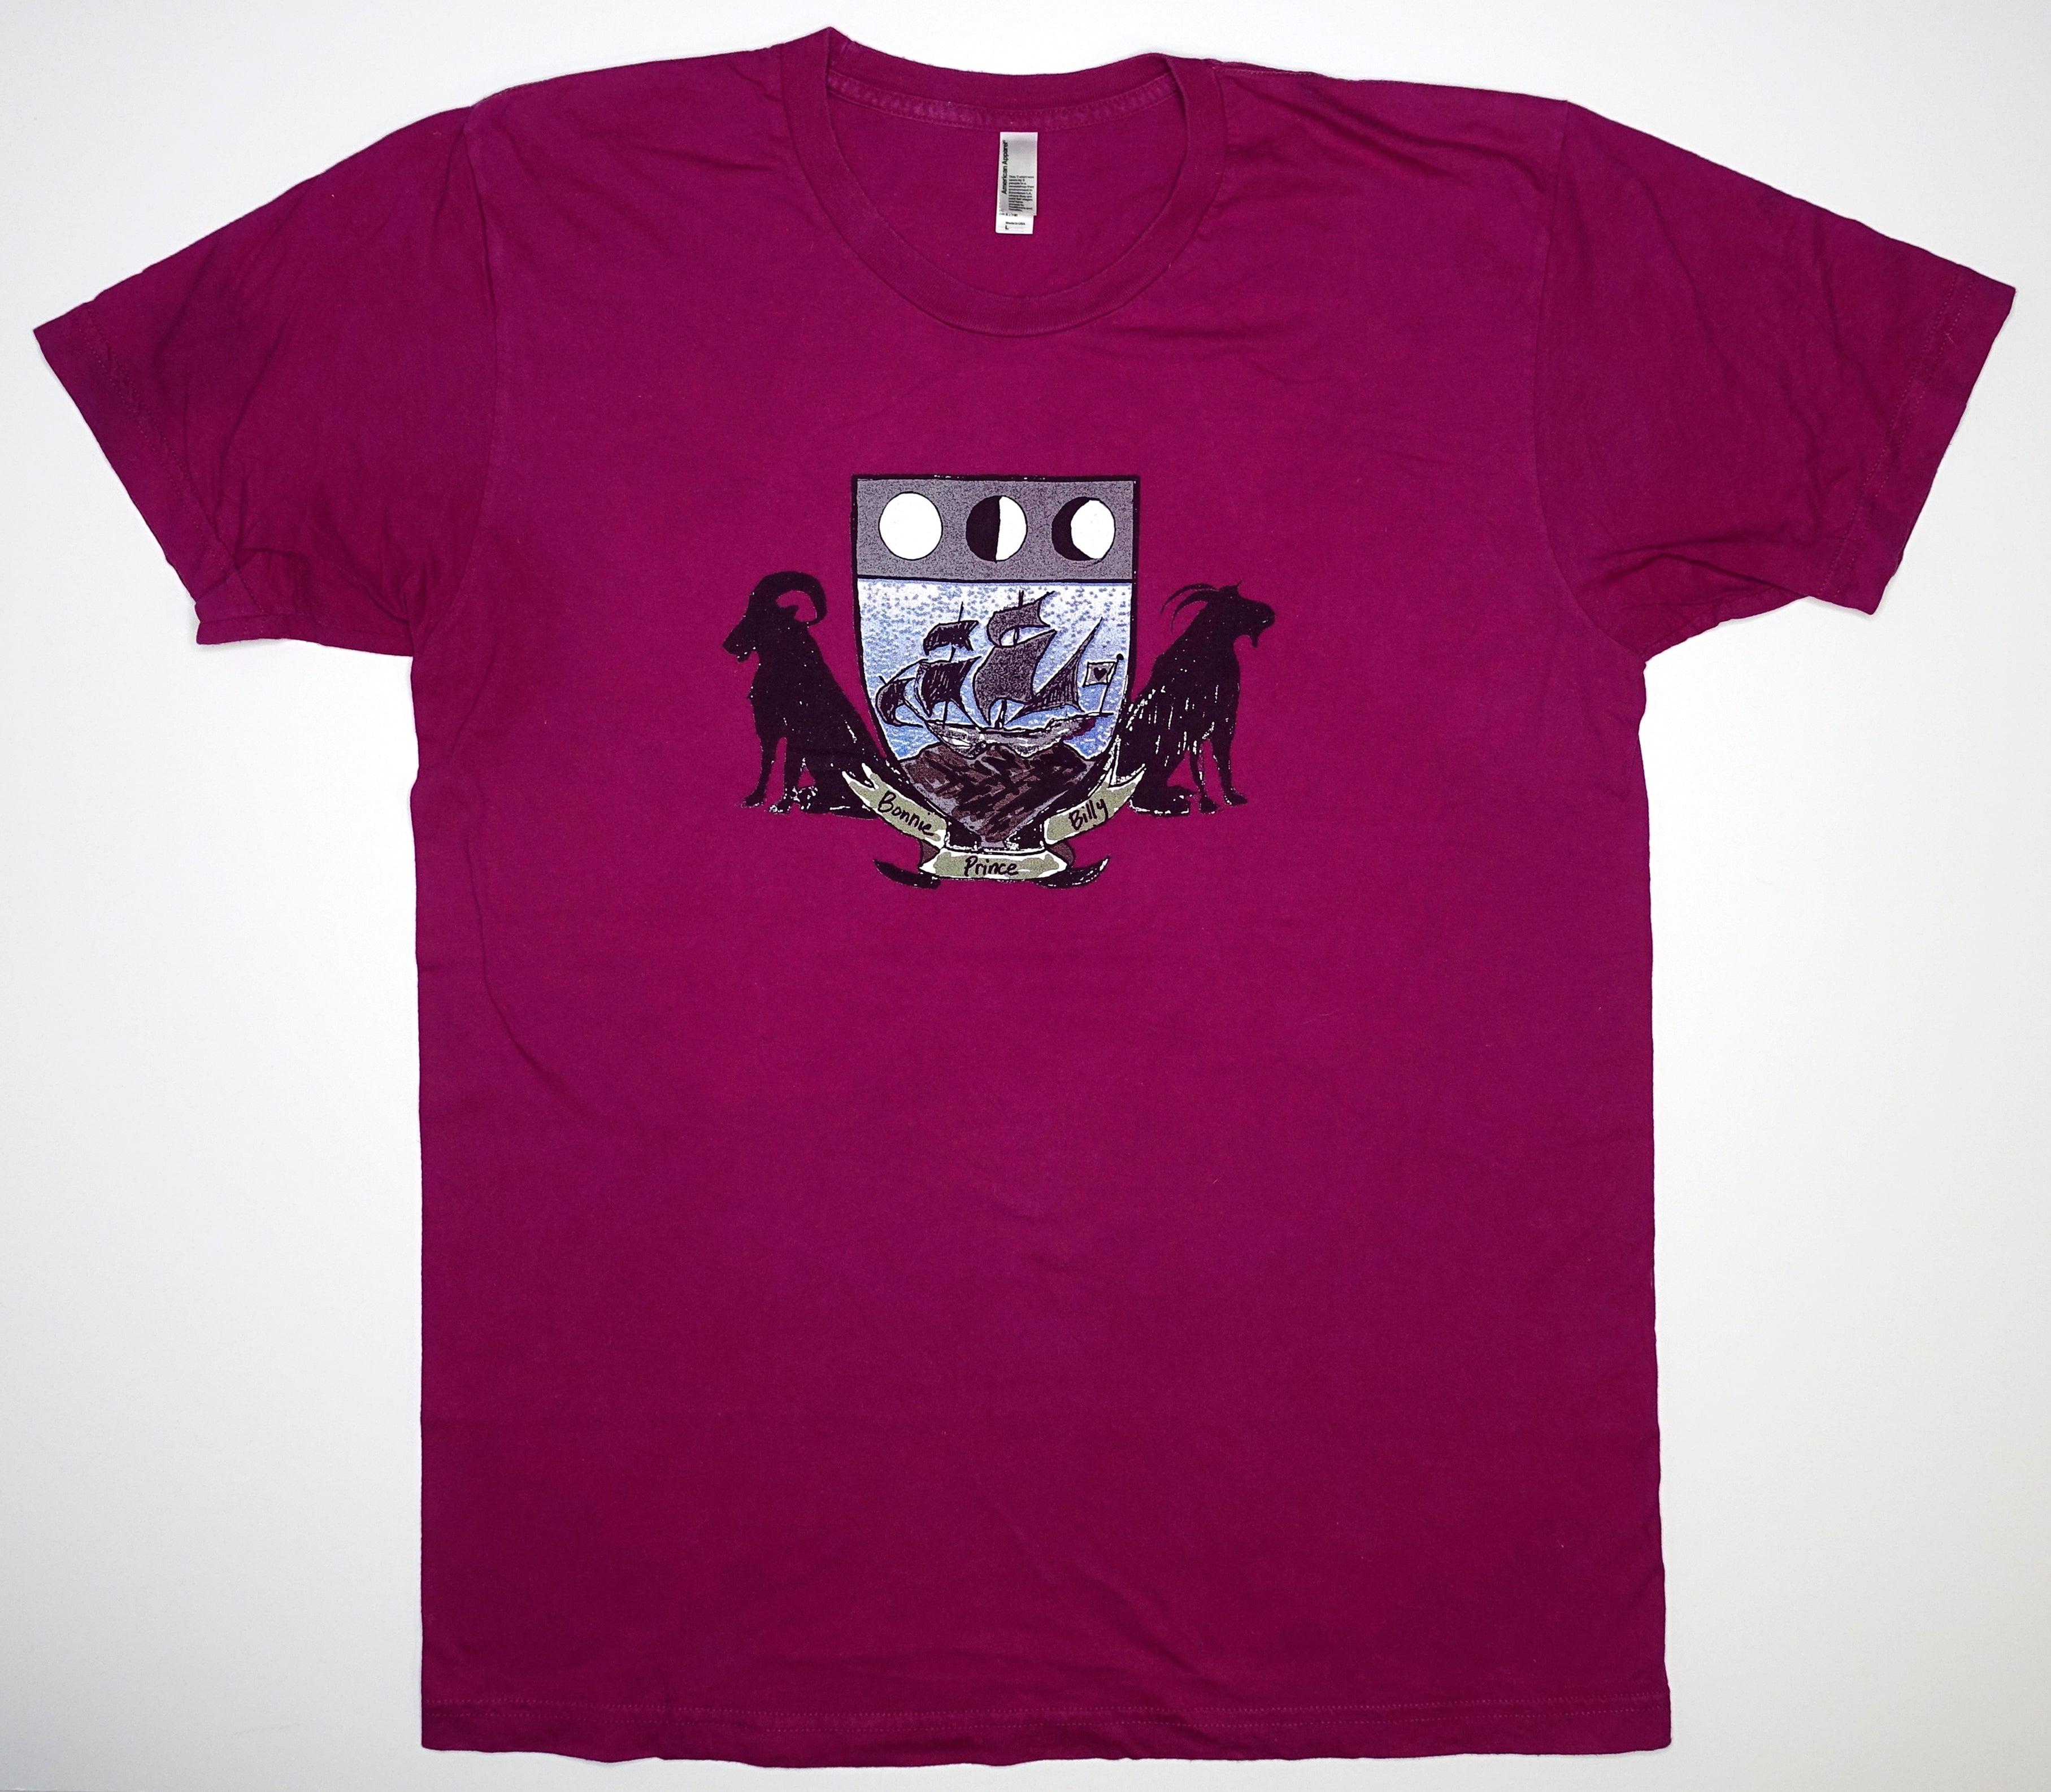 Bonnie "Prince" Billy - Goat Crest Tour Shirt Size Large